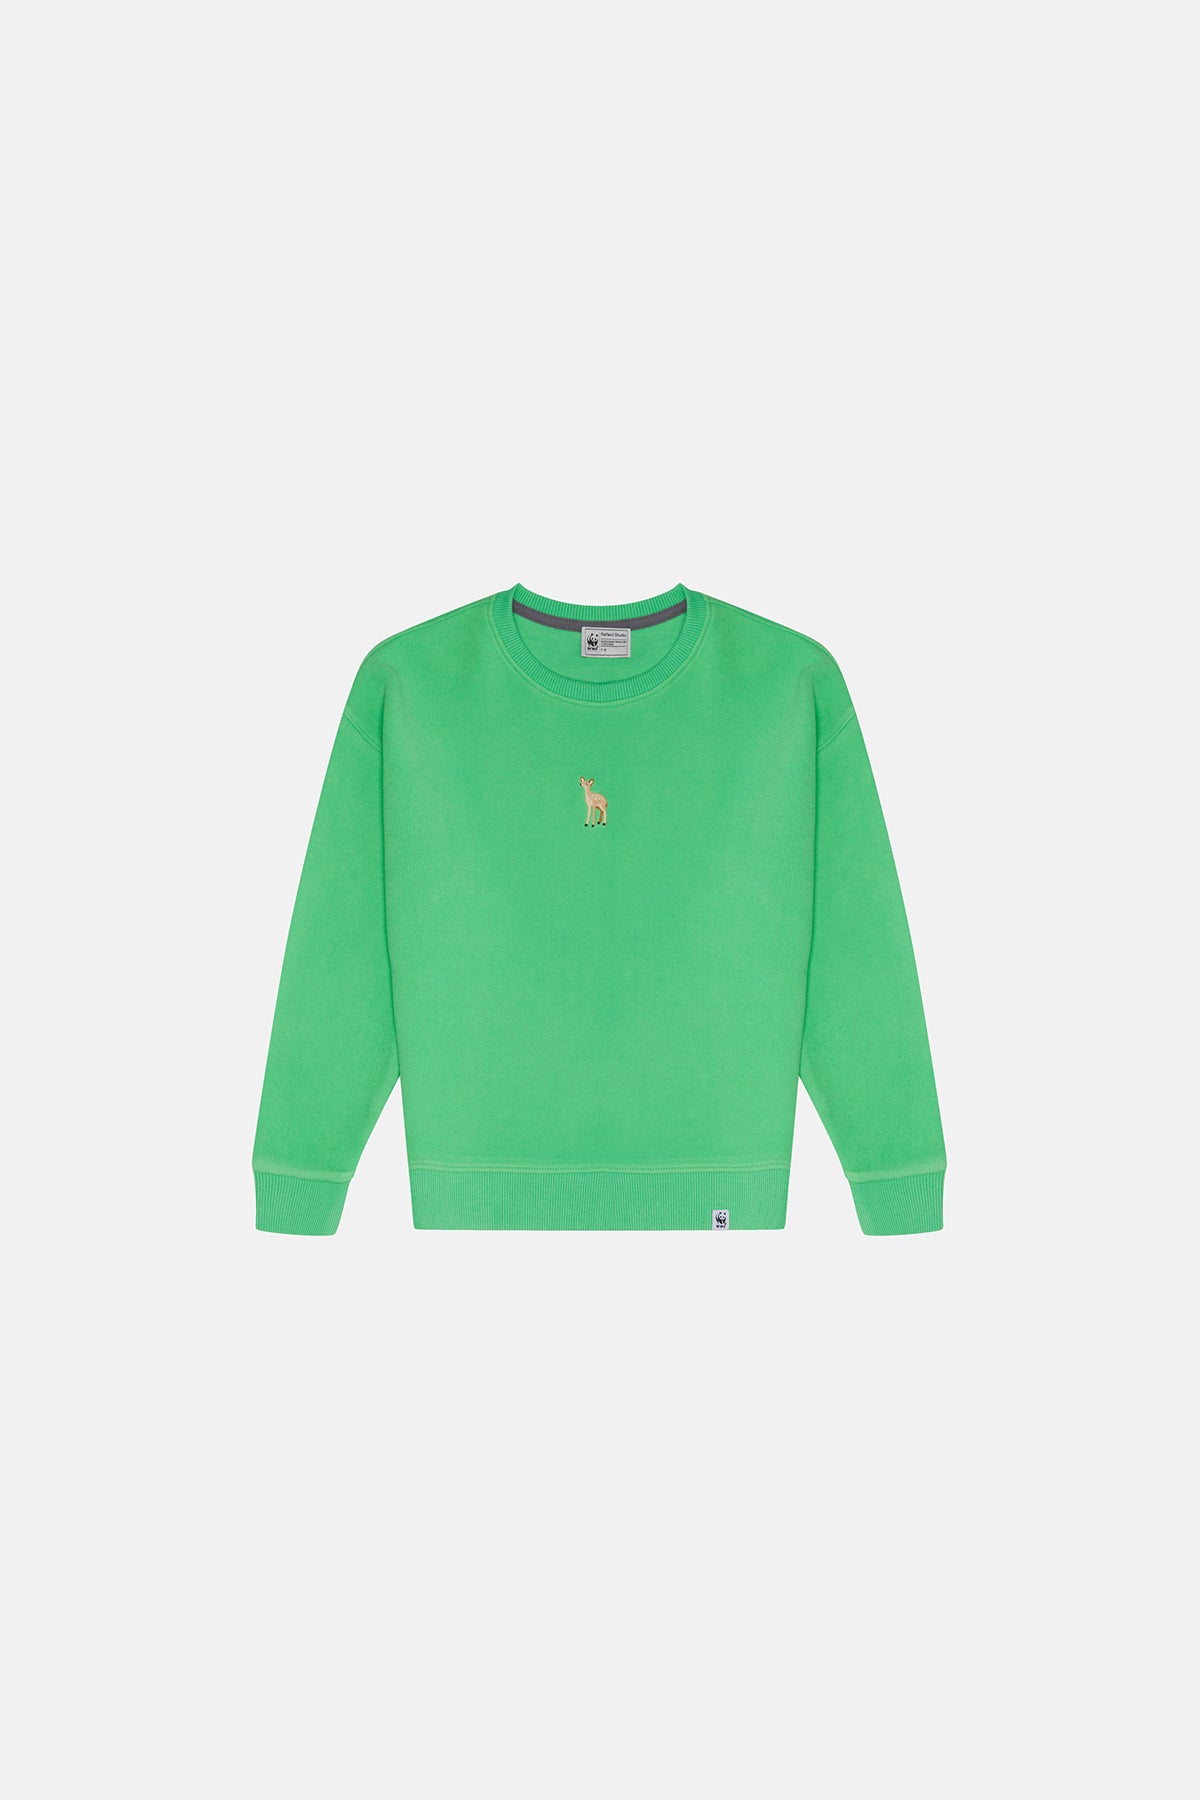 Ceylan Super Soft Çocuk Sweatshirt - Su Yeşili